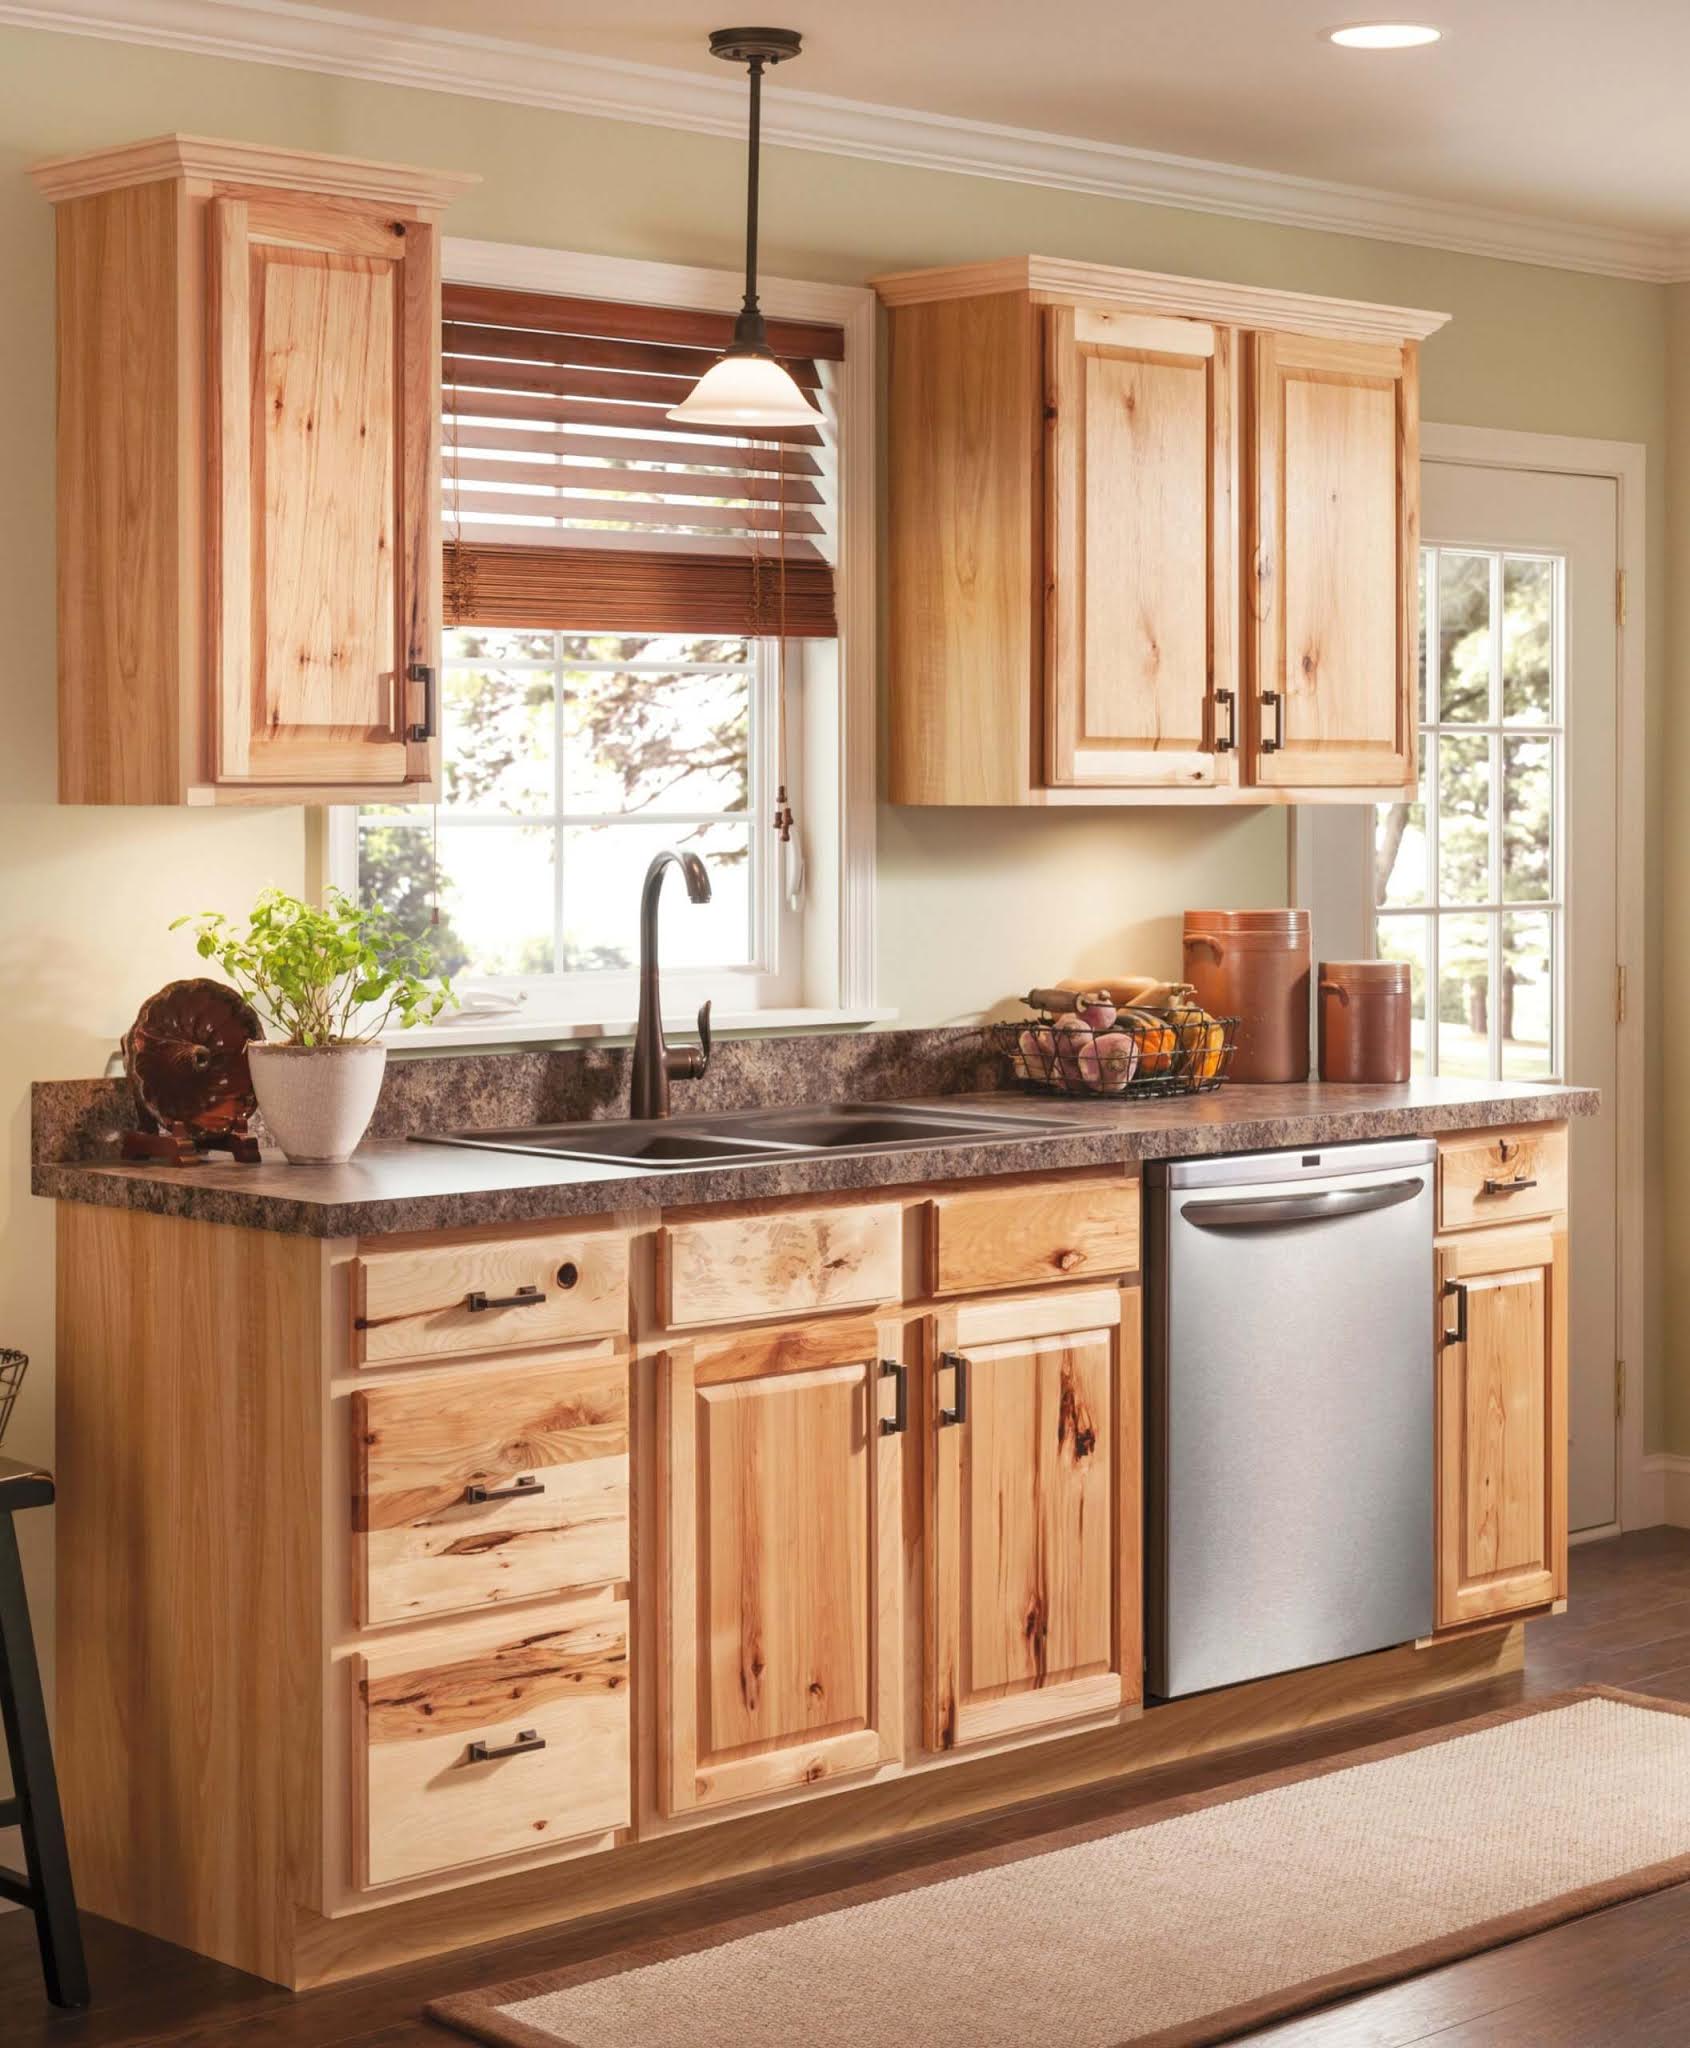 Кухни хорошие деревянные. Деревянная кухня. Кухонный гарнитур из дерева. Маленькие деревянные кухни. Кухонный гарнитур в стиле дерева.